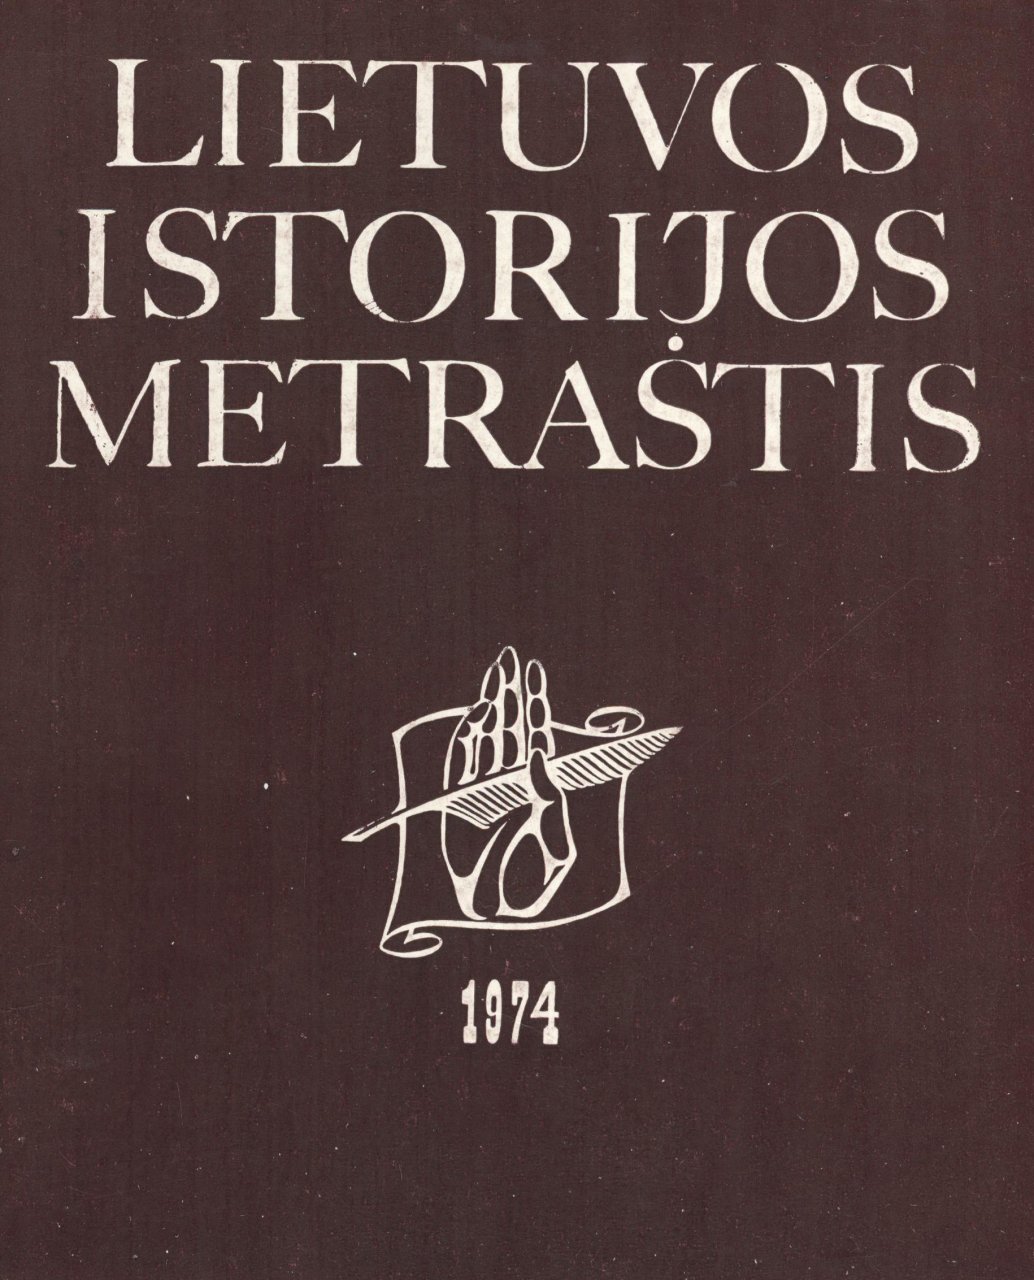 Lietuvos istorijos metraštis 1974 metai